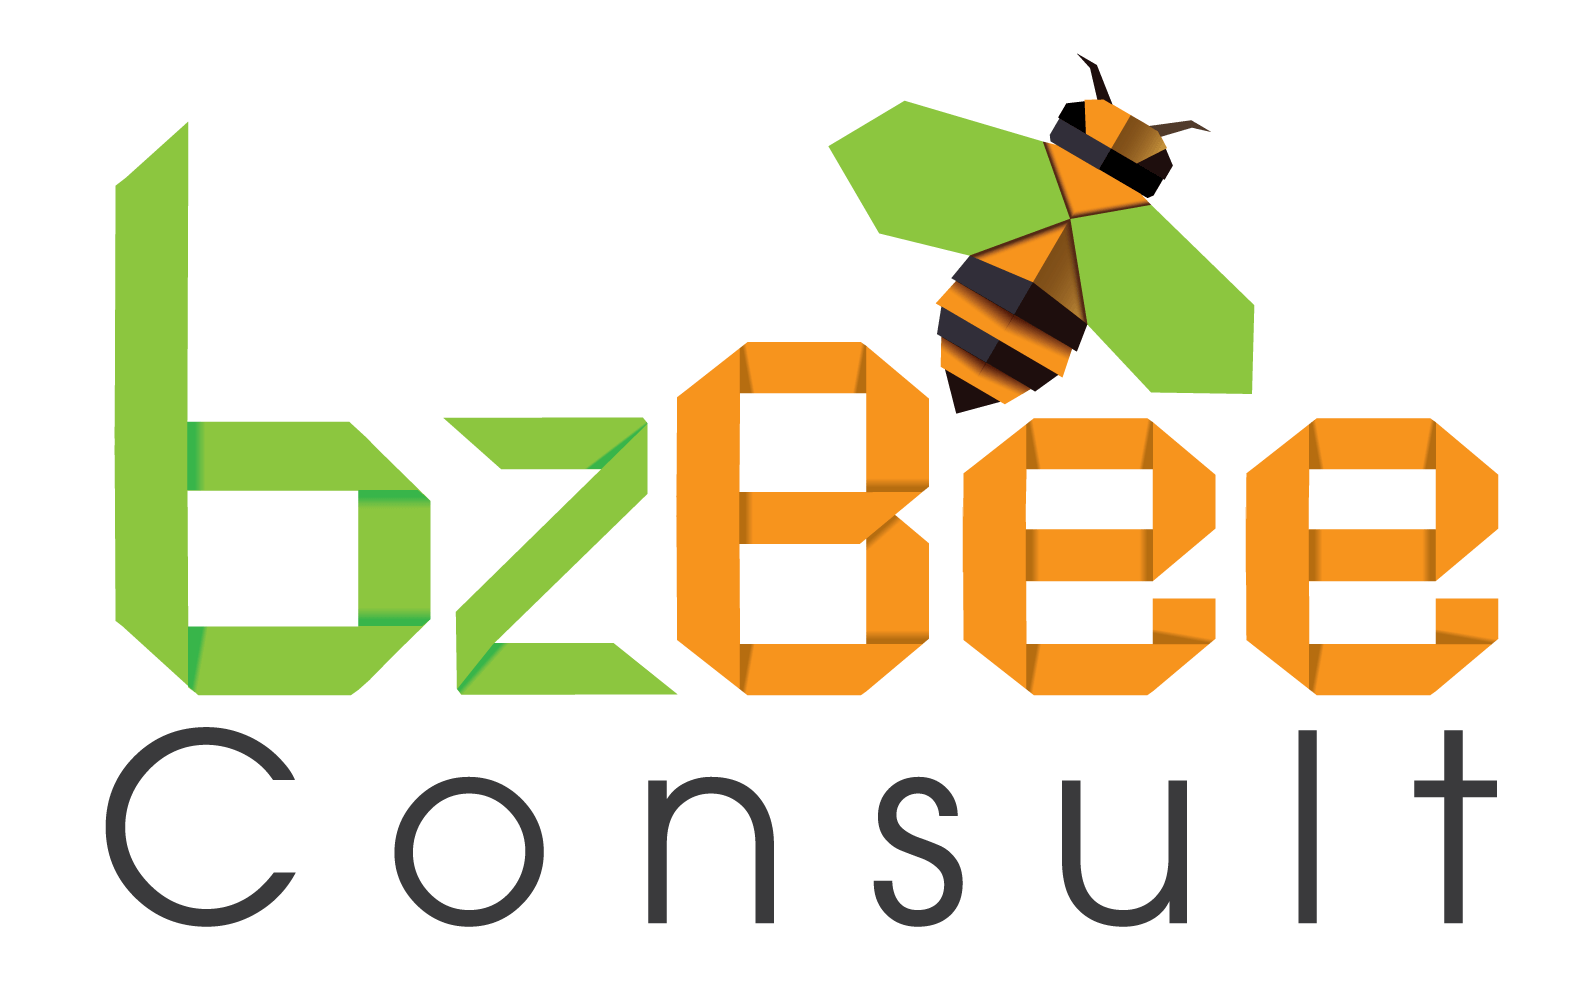 Logo New bzBee